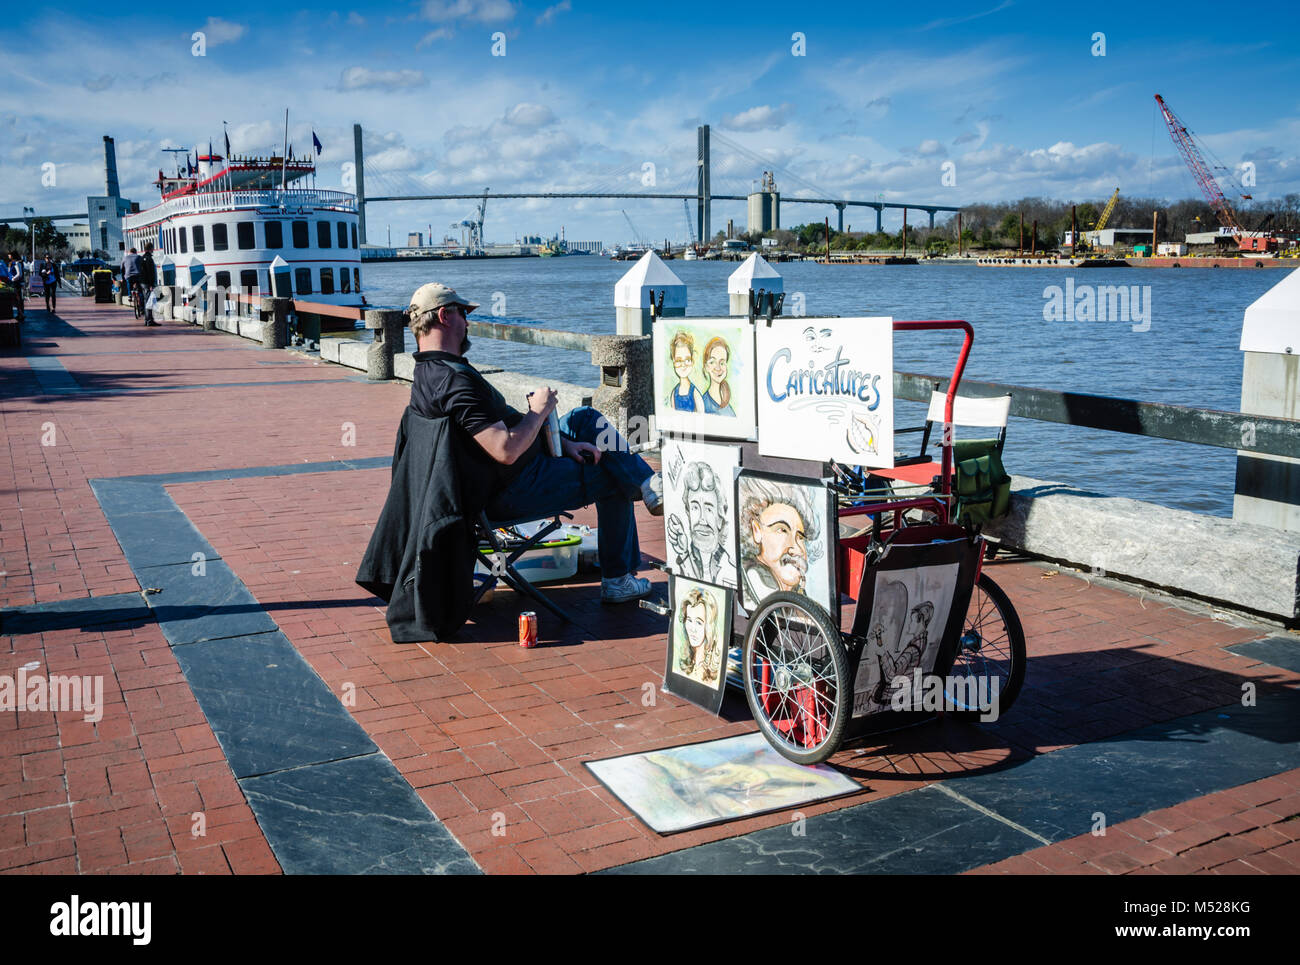 La caricatura di stand e barca fluviale sul riverfront promenade di Savannah, GA. Foto Stock